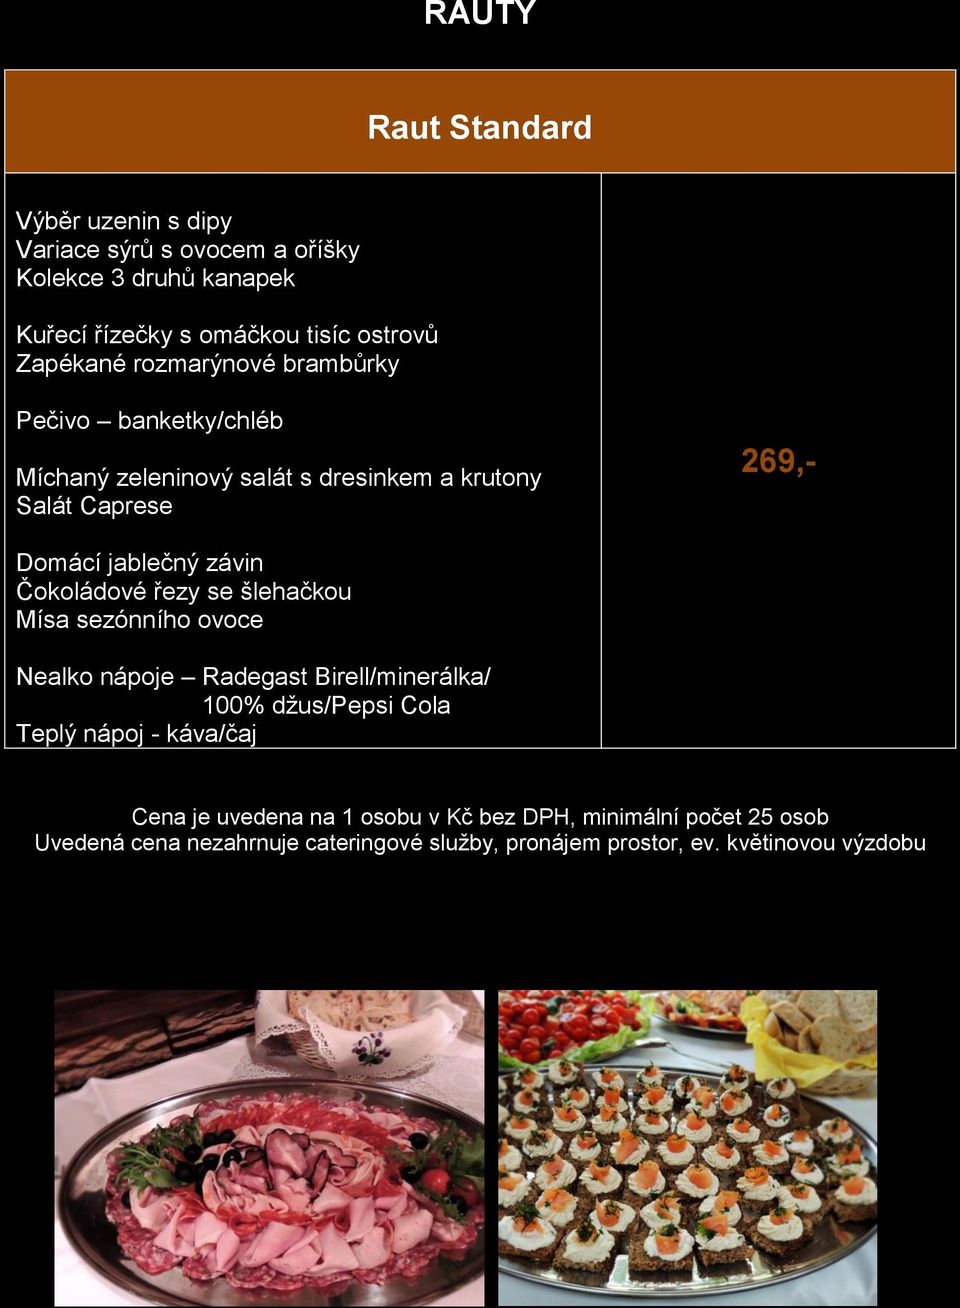 Míchaný zeleninový salát s dresinkem a krutony Salát Caprese 269,- Čokoládové řezy se šlehačkou